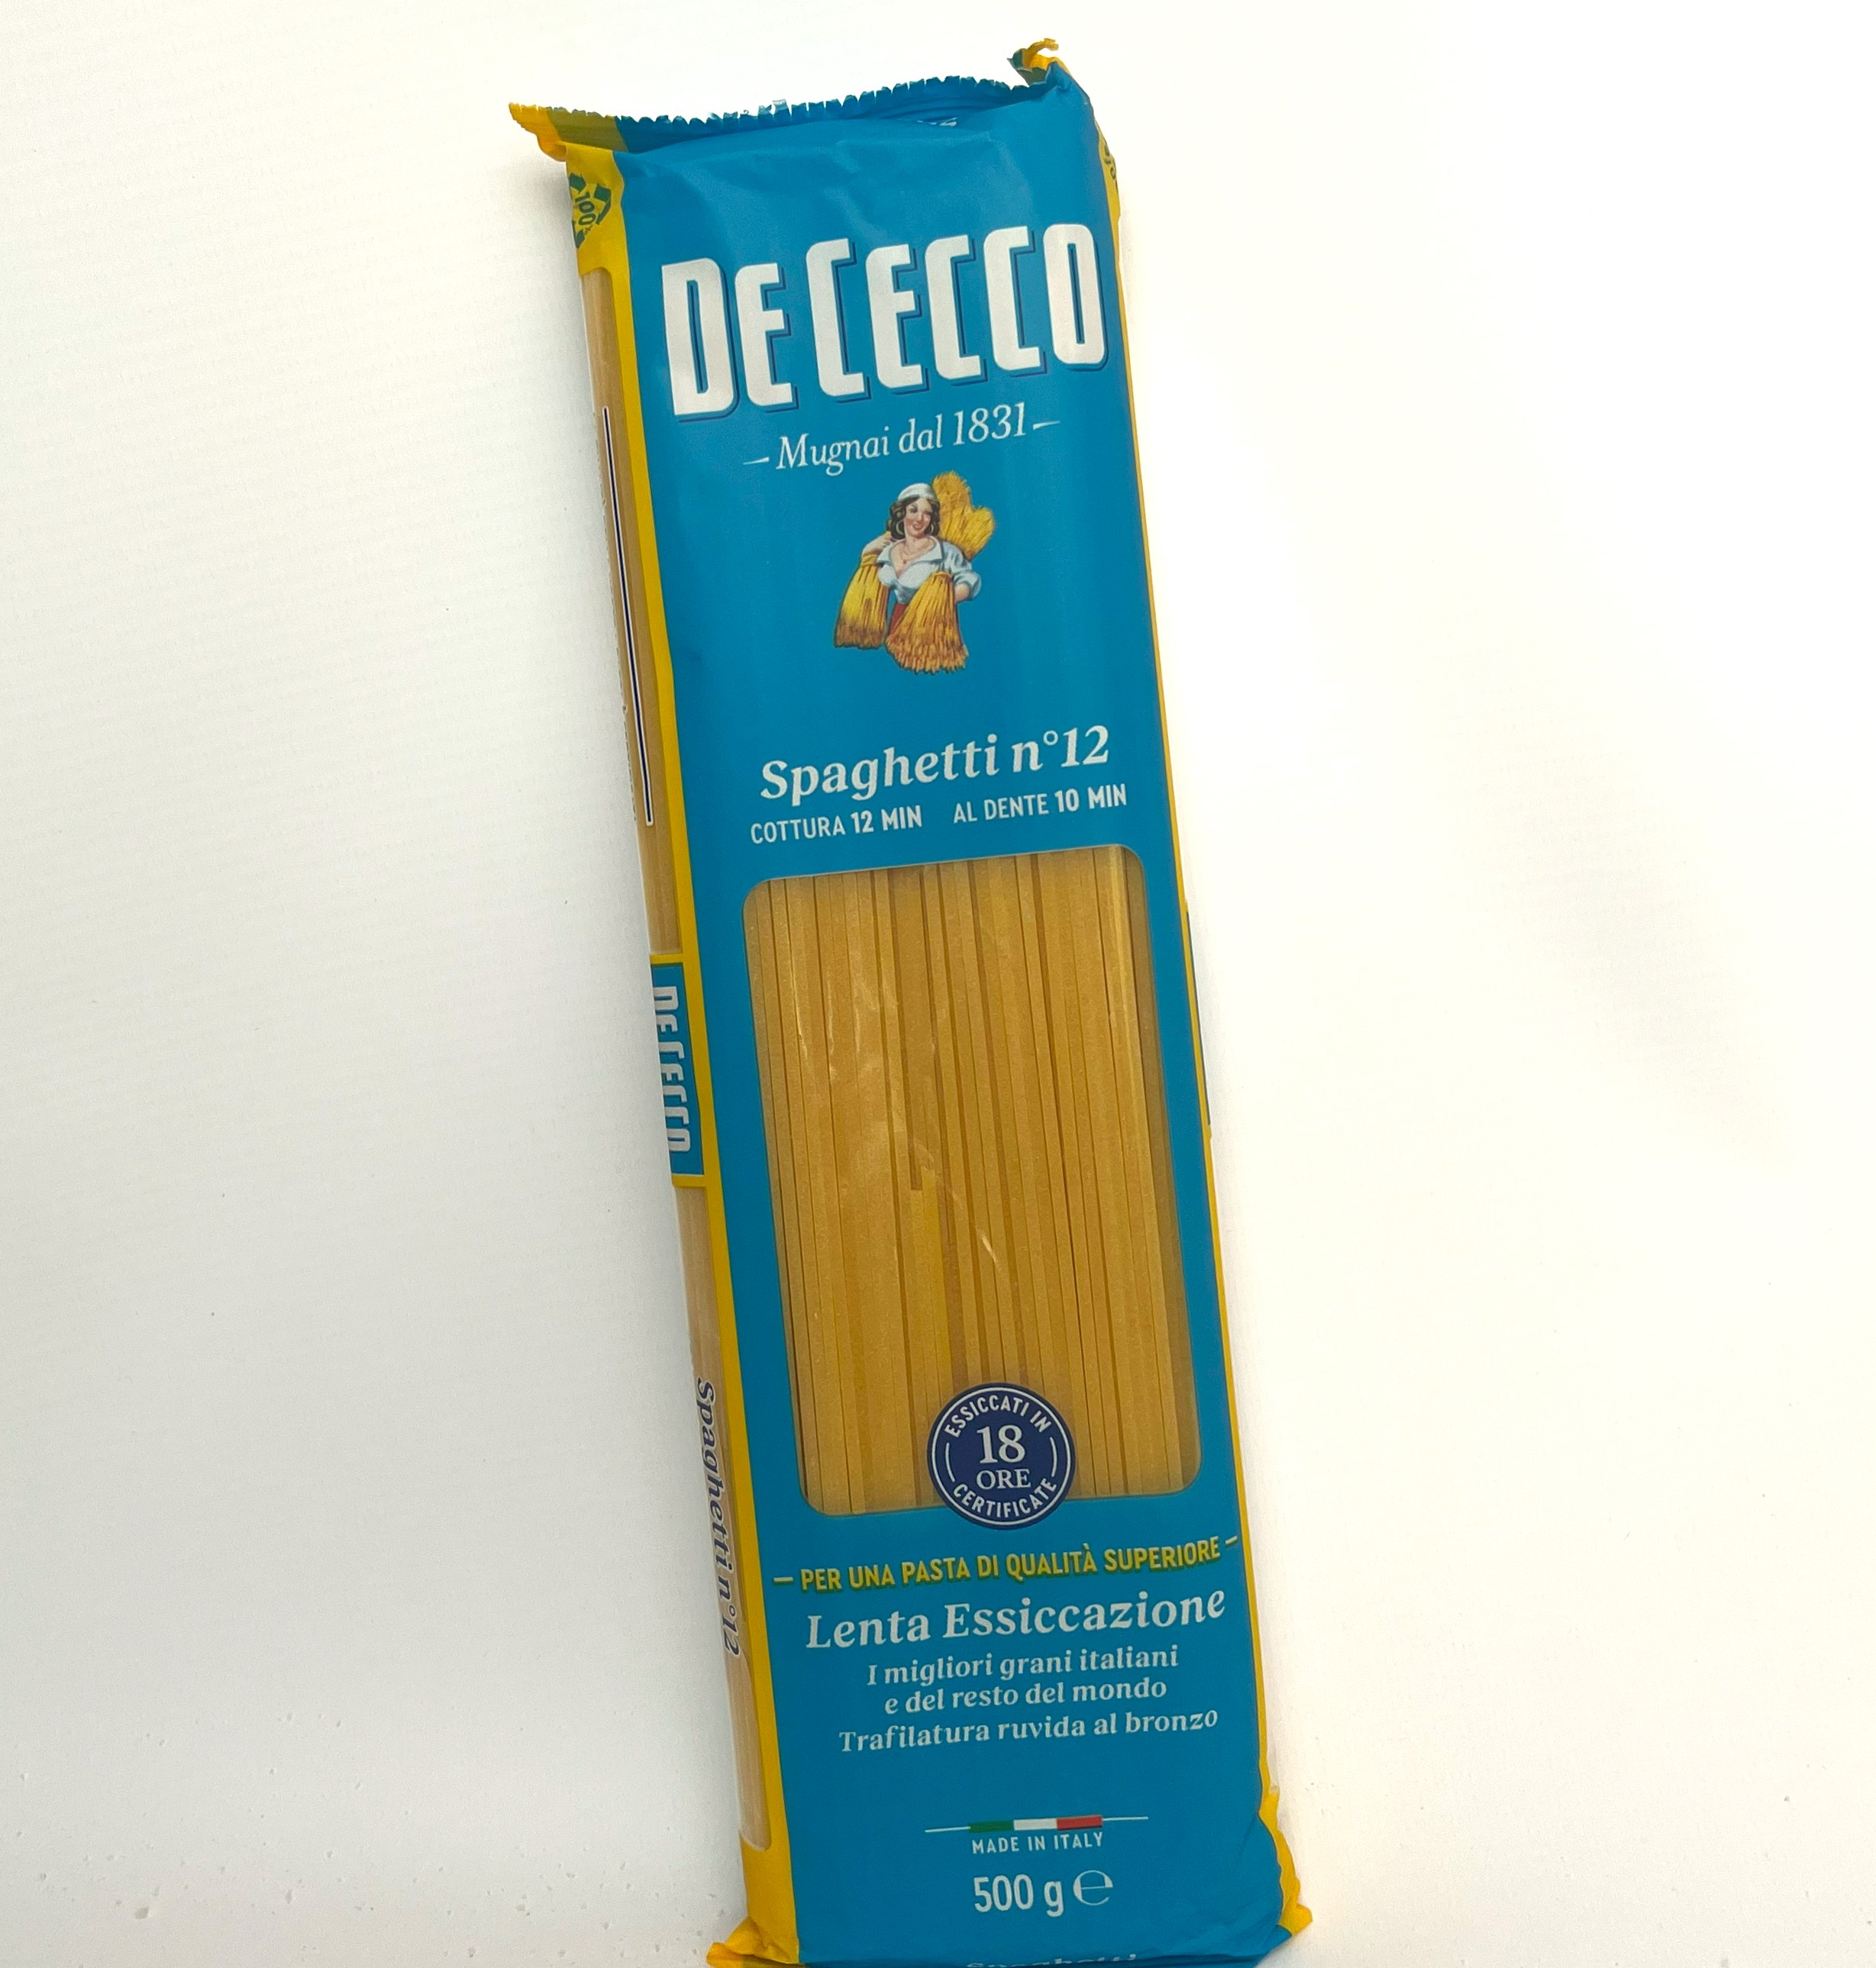 Spaghetti n° 12 | De Cecco | 500 g